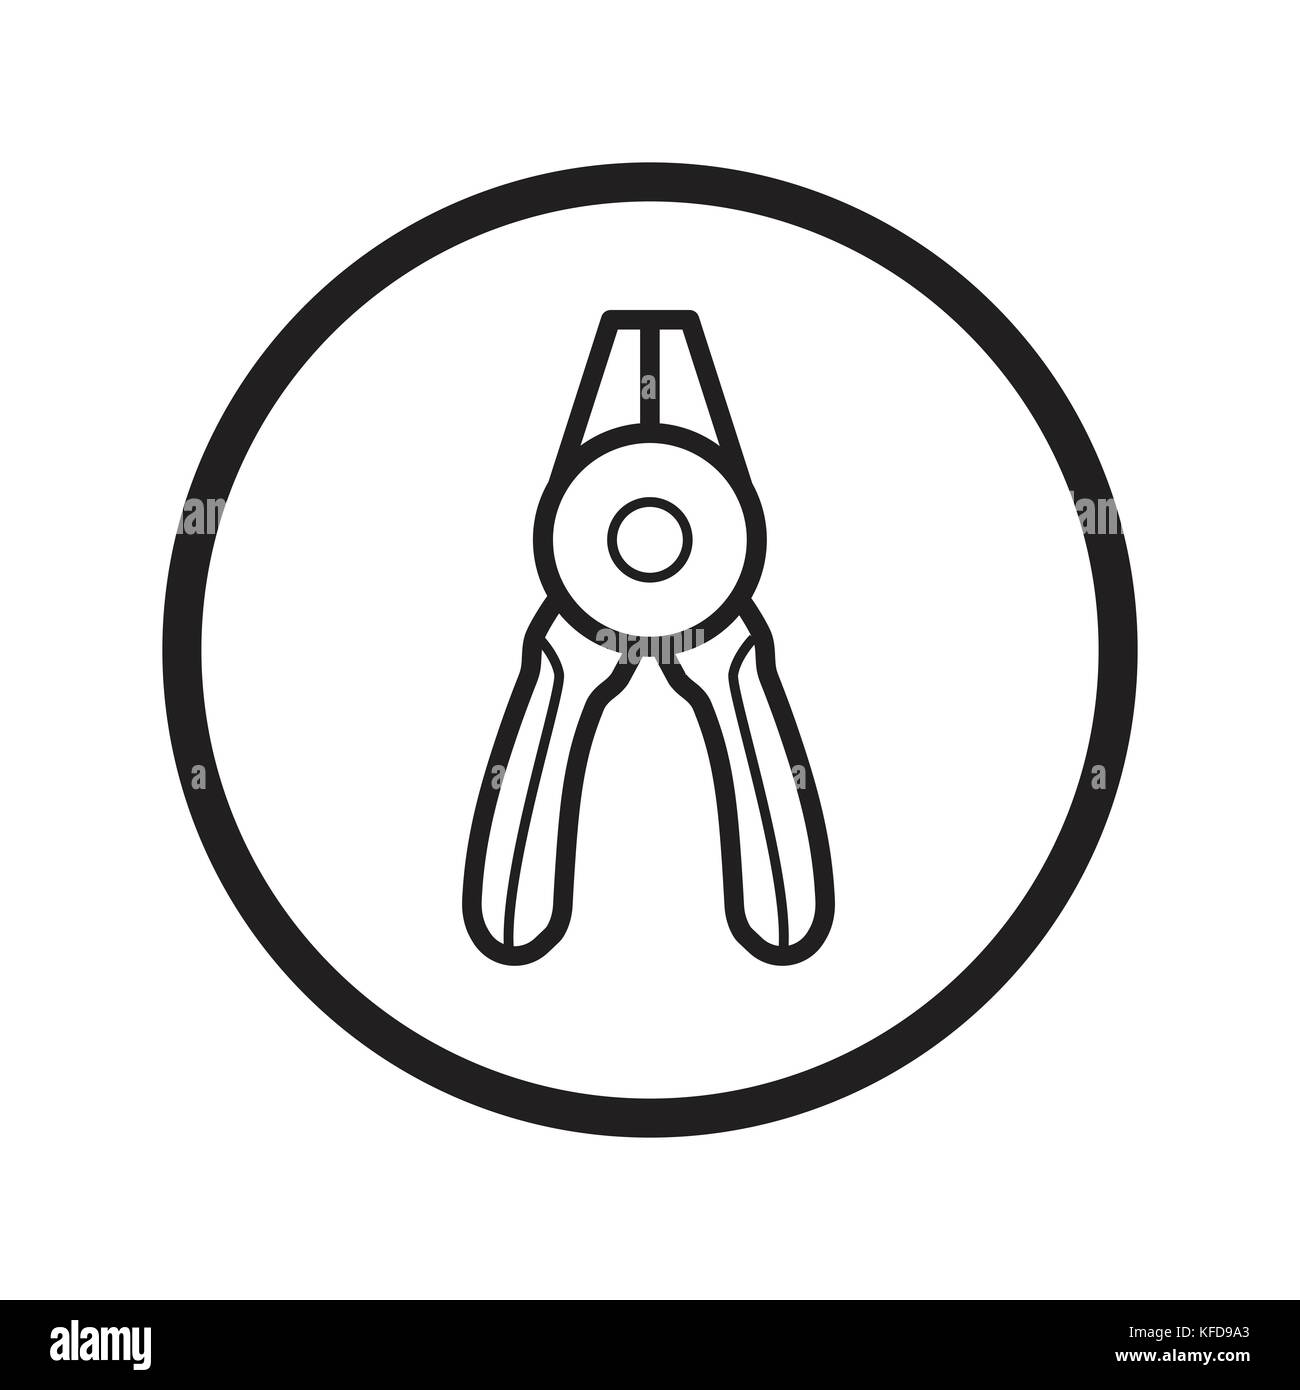 Lineare di pinze a becchi tondi icona, fix tools simbolo iconico all'interno di un cerchio, su sfondo bianco. vettore design iconico. Illustrazione Vettoriale